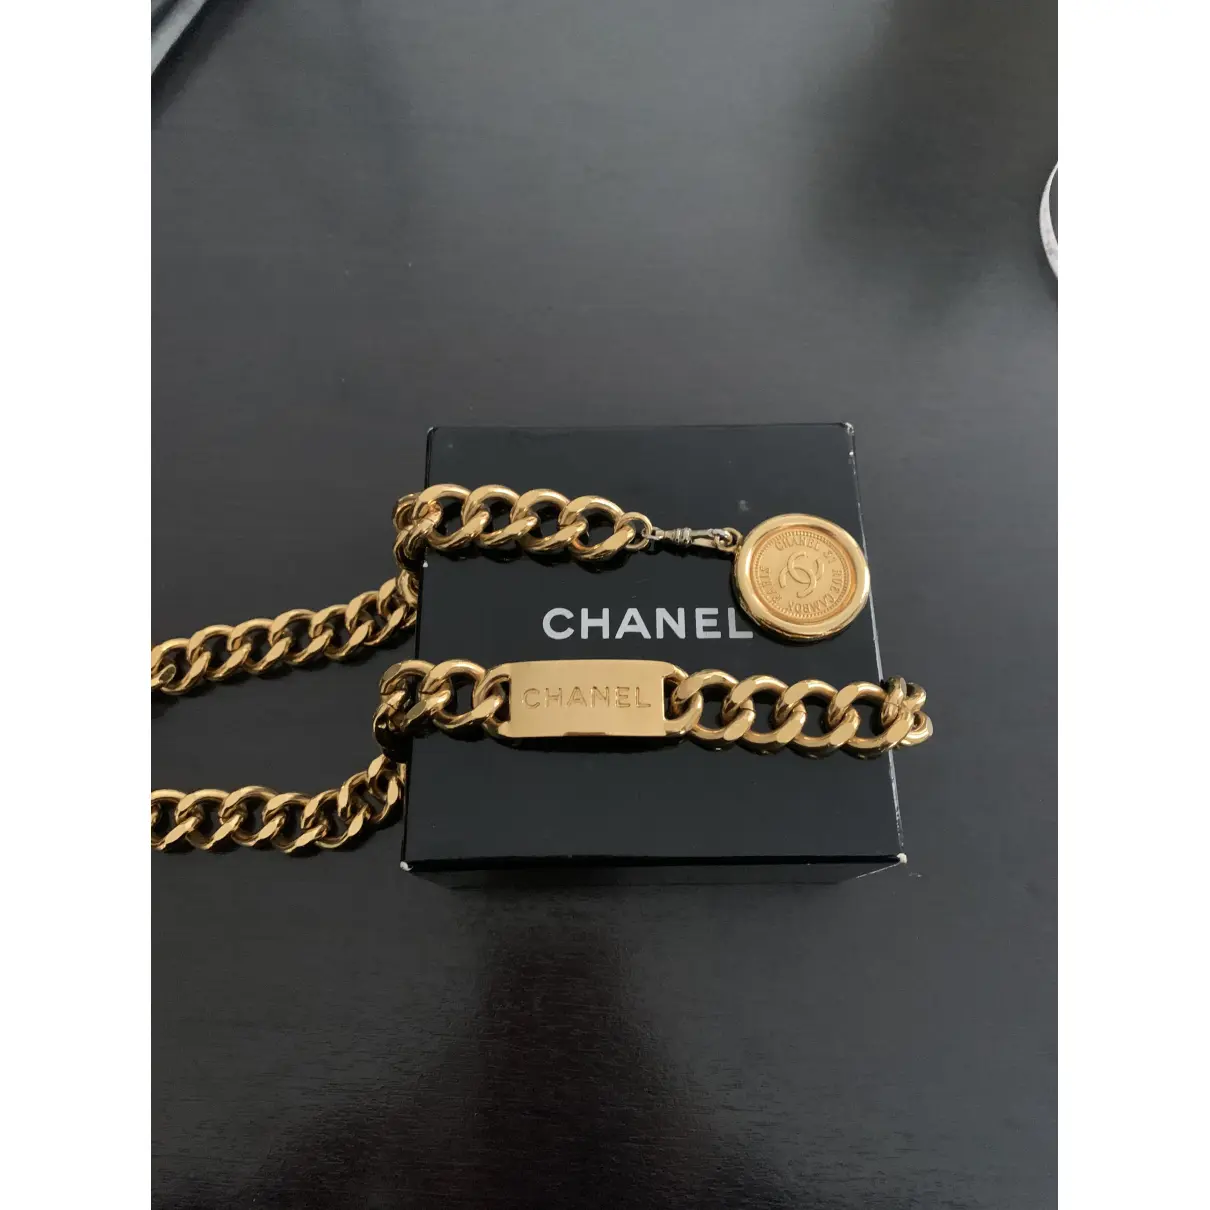 Buy Chanel Belt online - Vintage